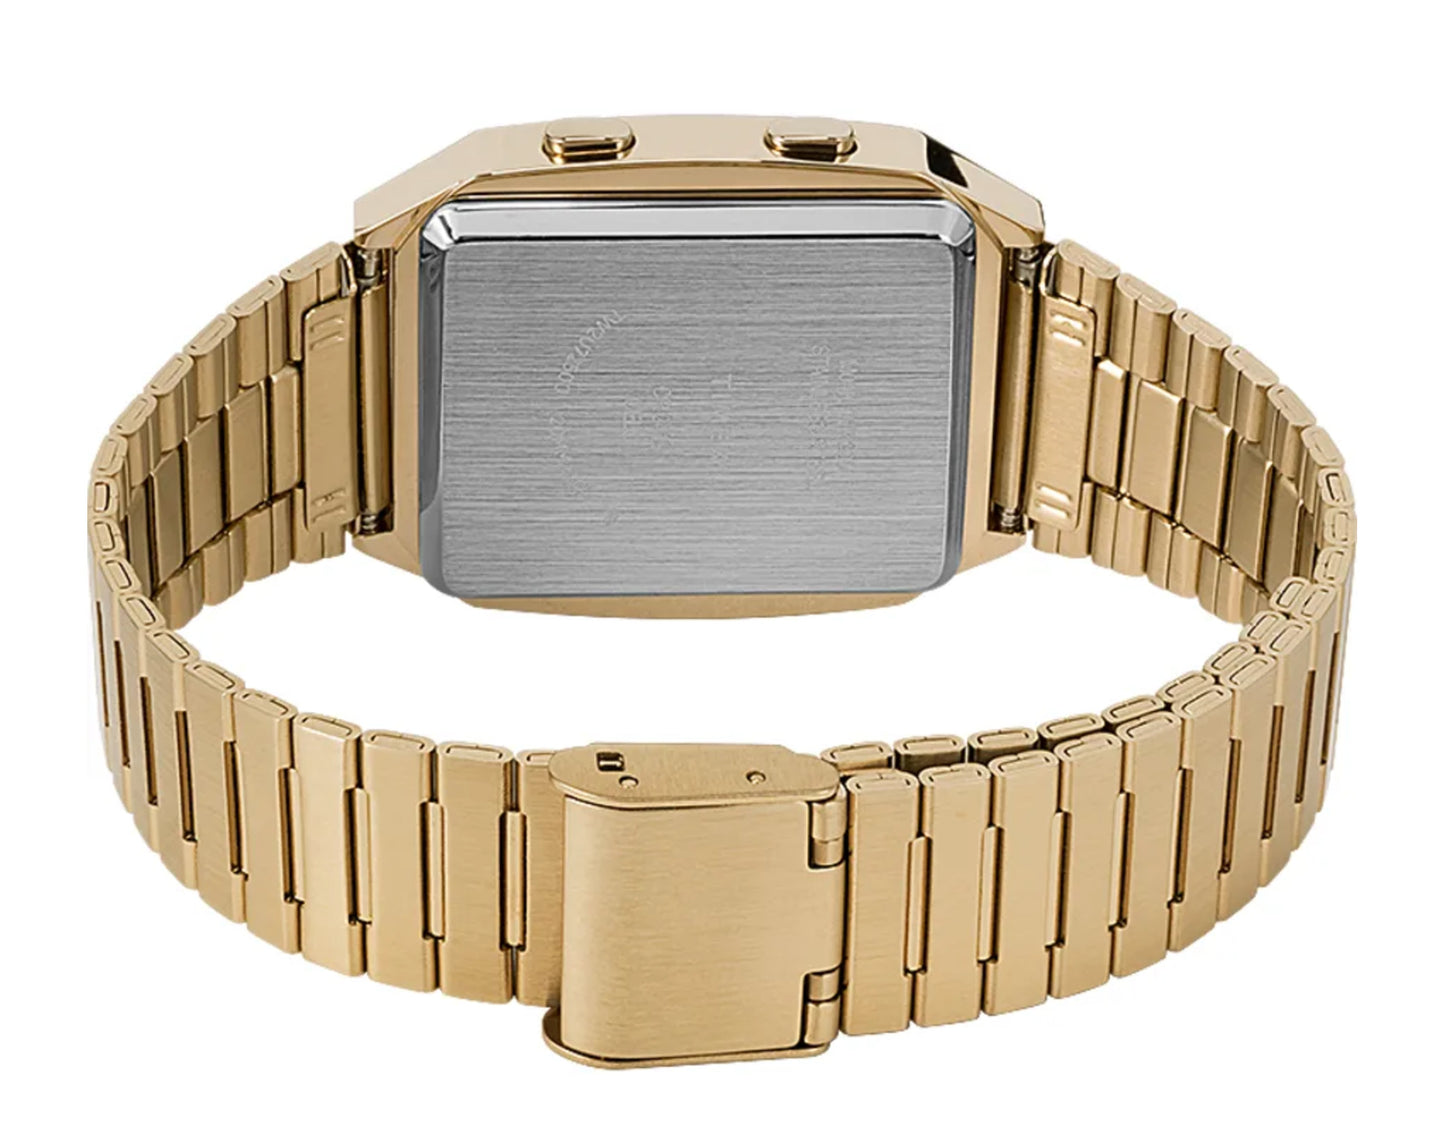 Timex Q Reissue Digital LCA 32.5mm Steel Bracelet Gold Watch TW2U72500ZV